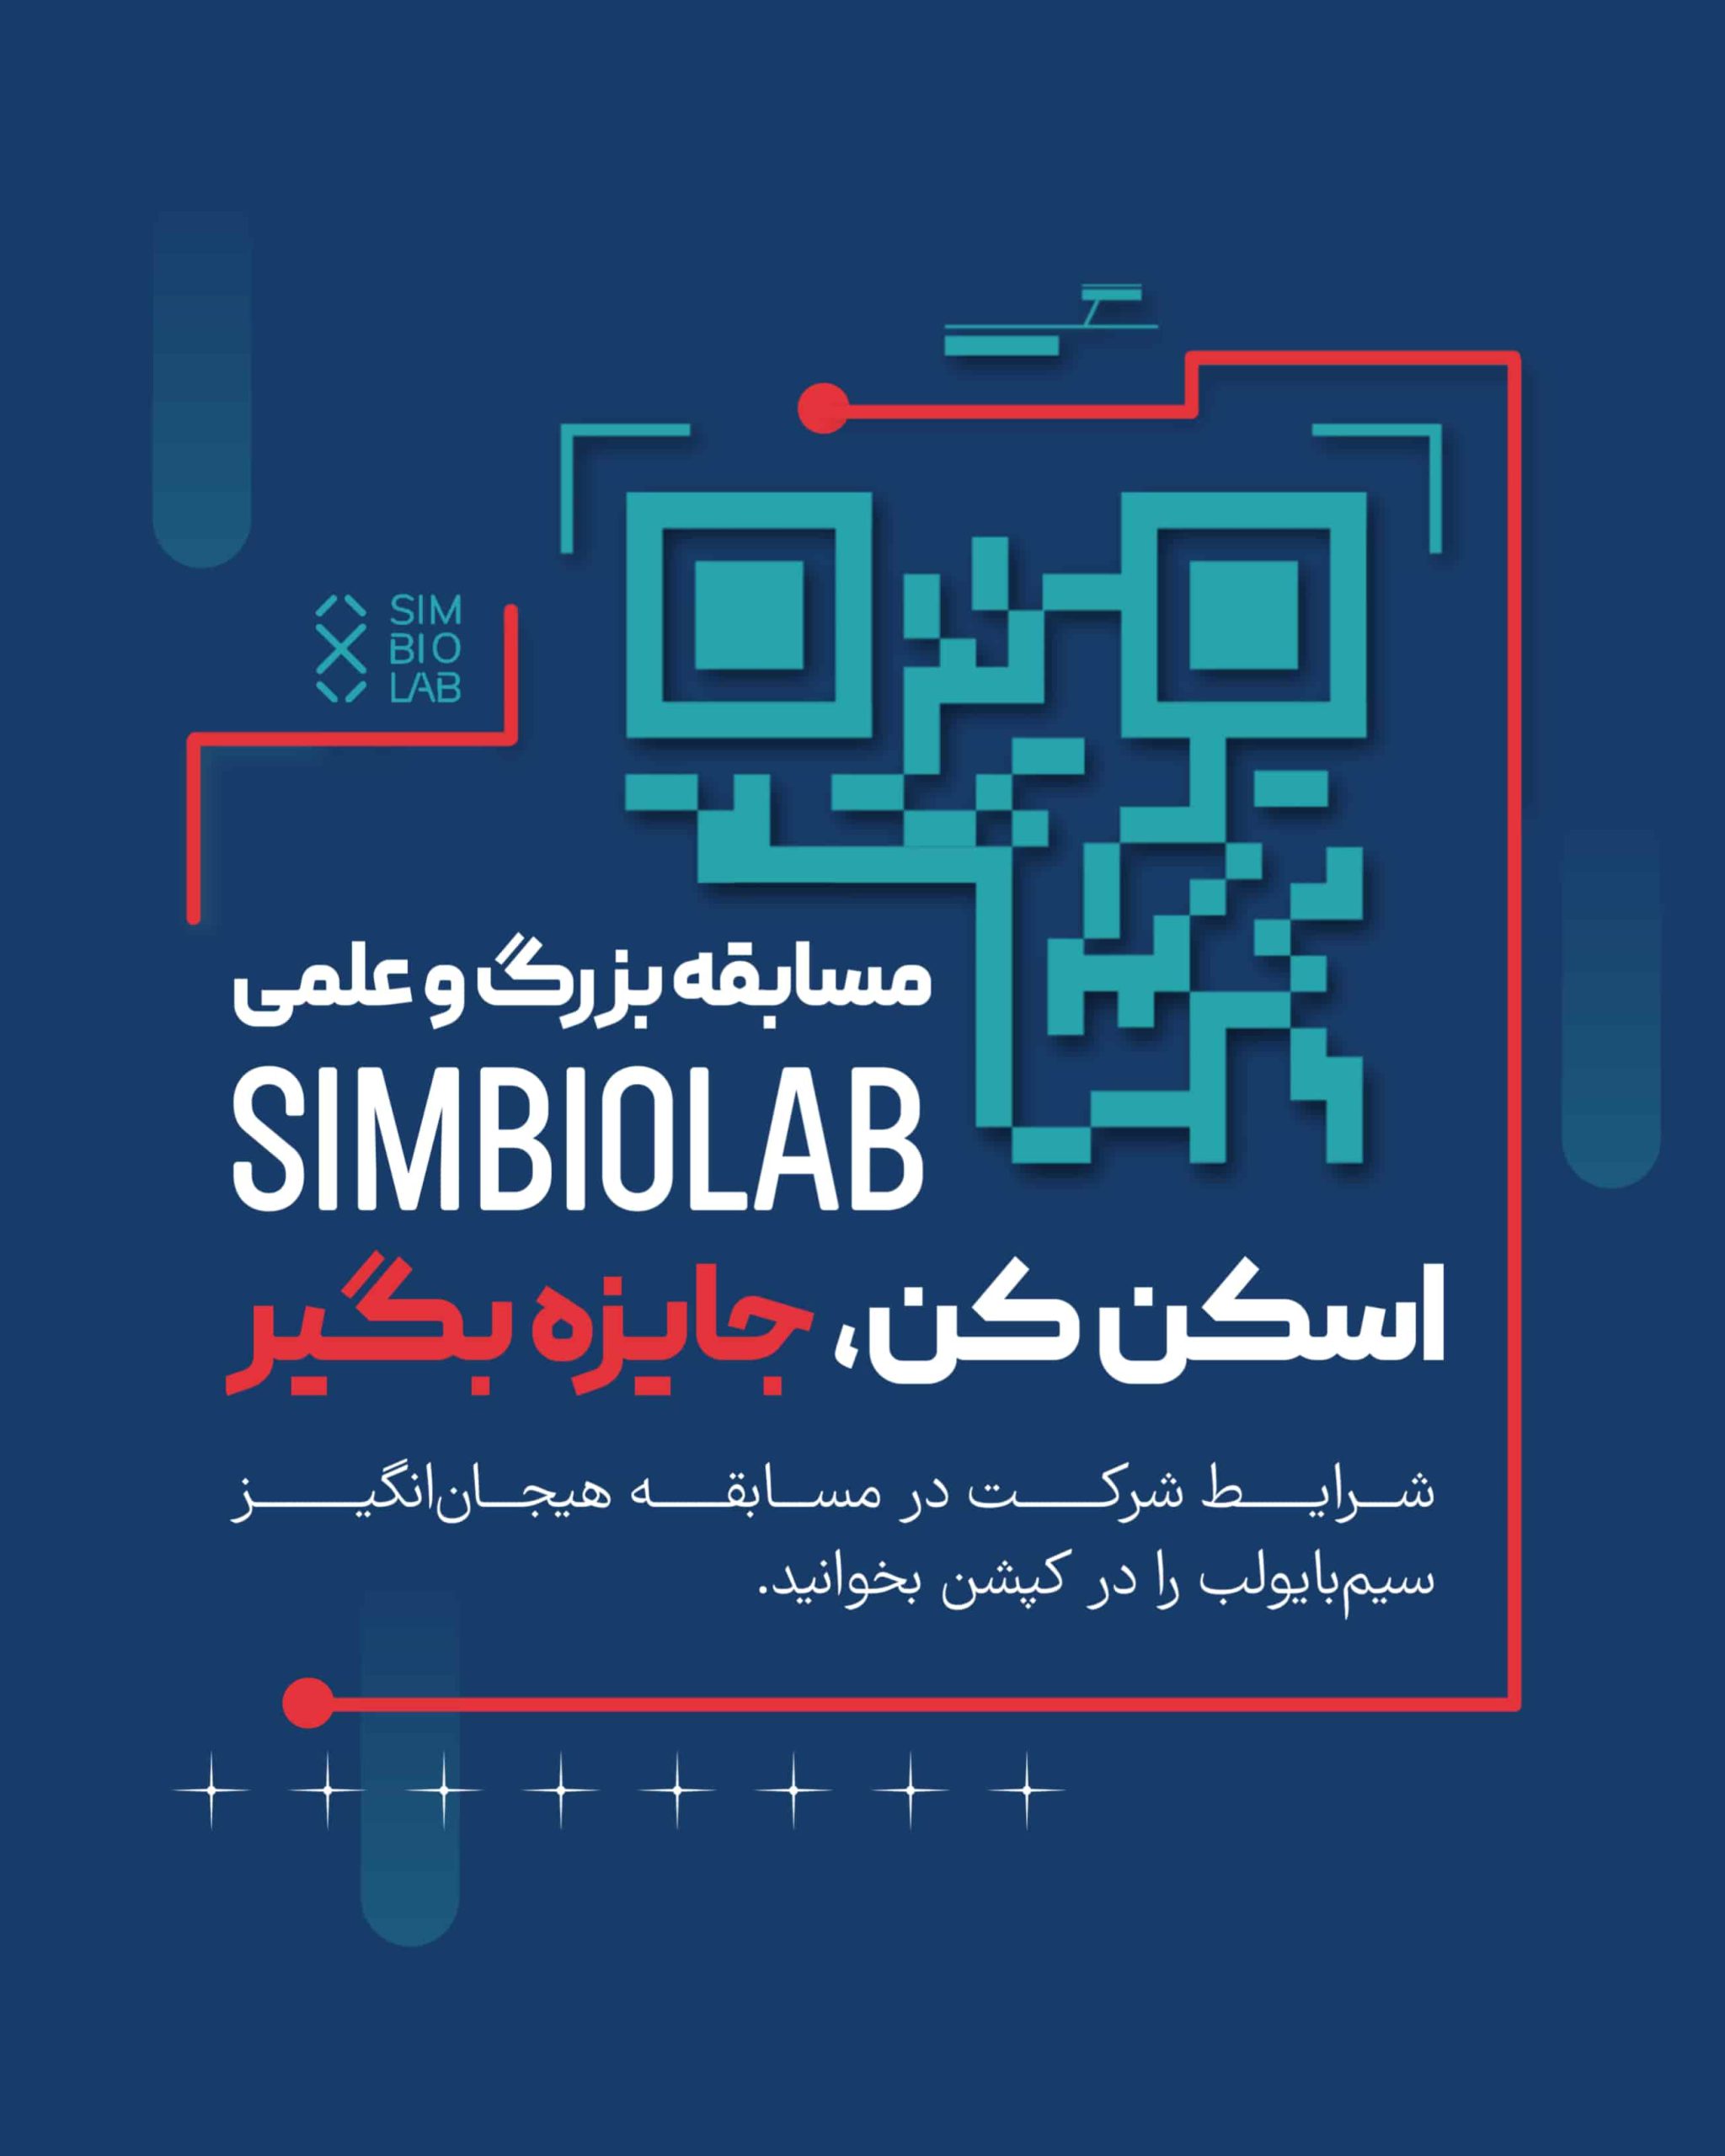 مسابقه شرکت SIMBIOLAB